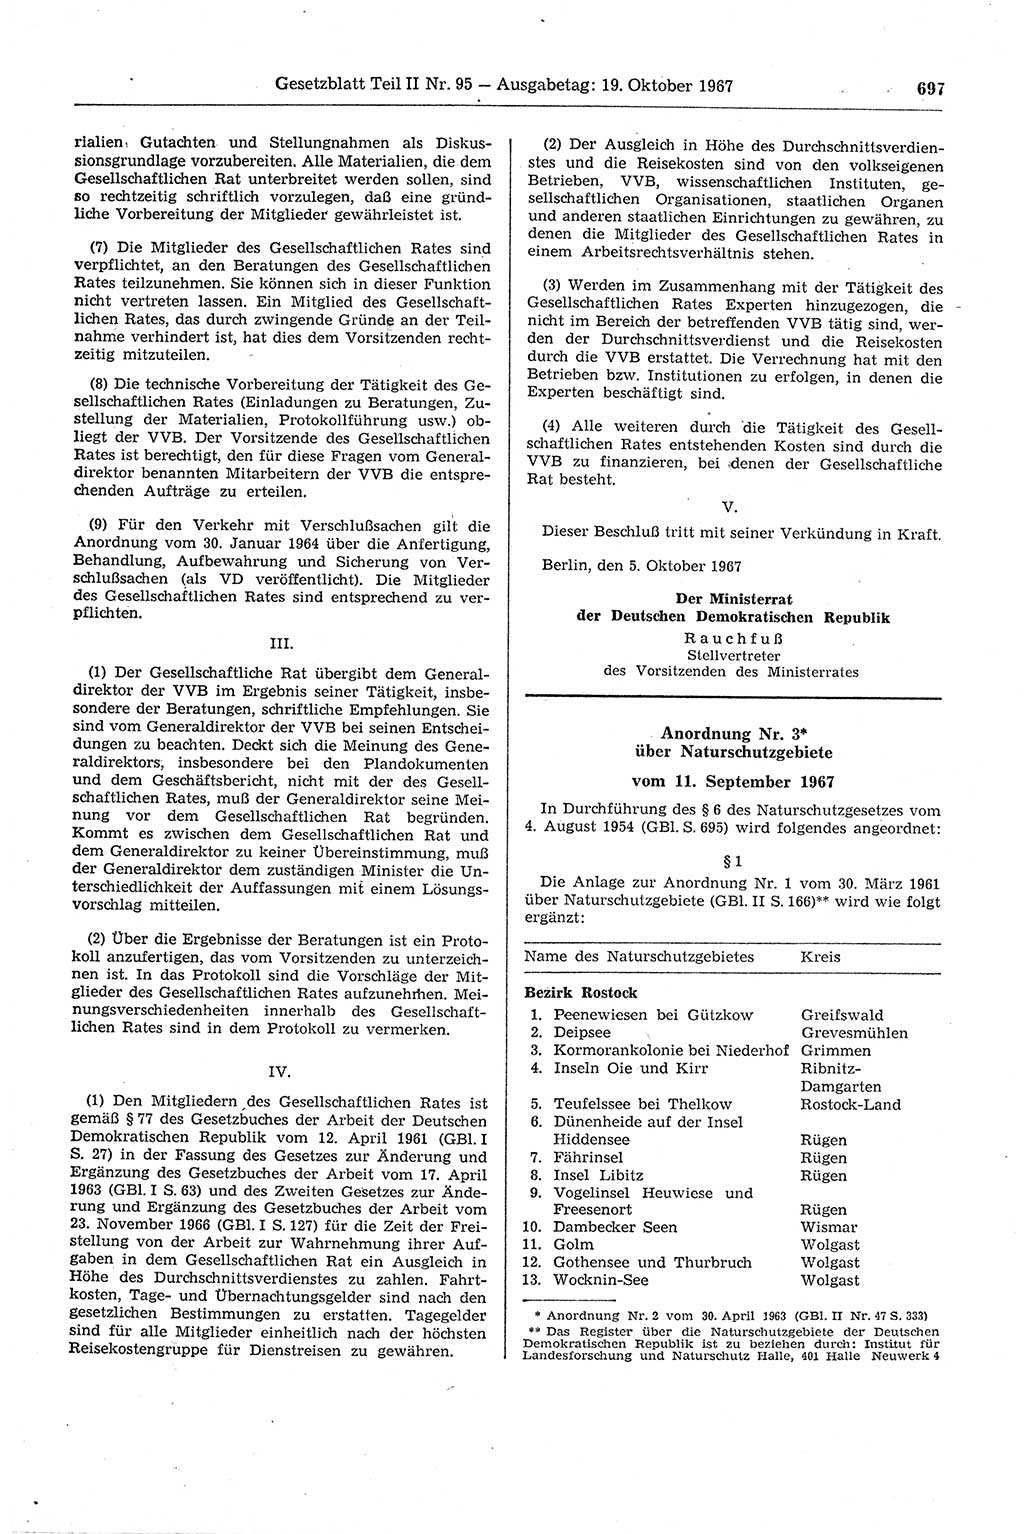 Gesetzblatt (GBl.) der Deutschen Demokratischen Republik (DDR) Teil ⅠⅠ 1967, Seite 697 (GBl. DDR ⅠⅠ 1967, S. 697)